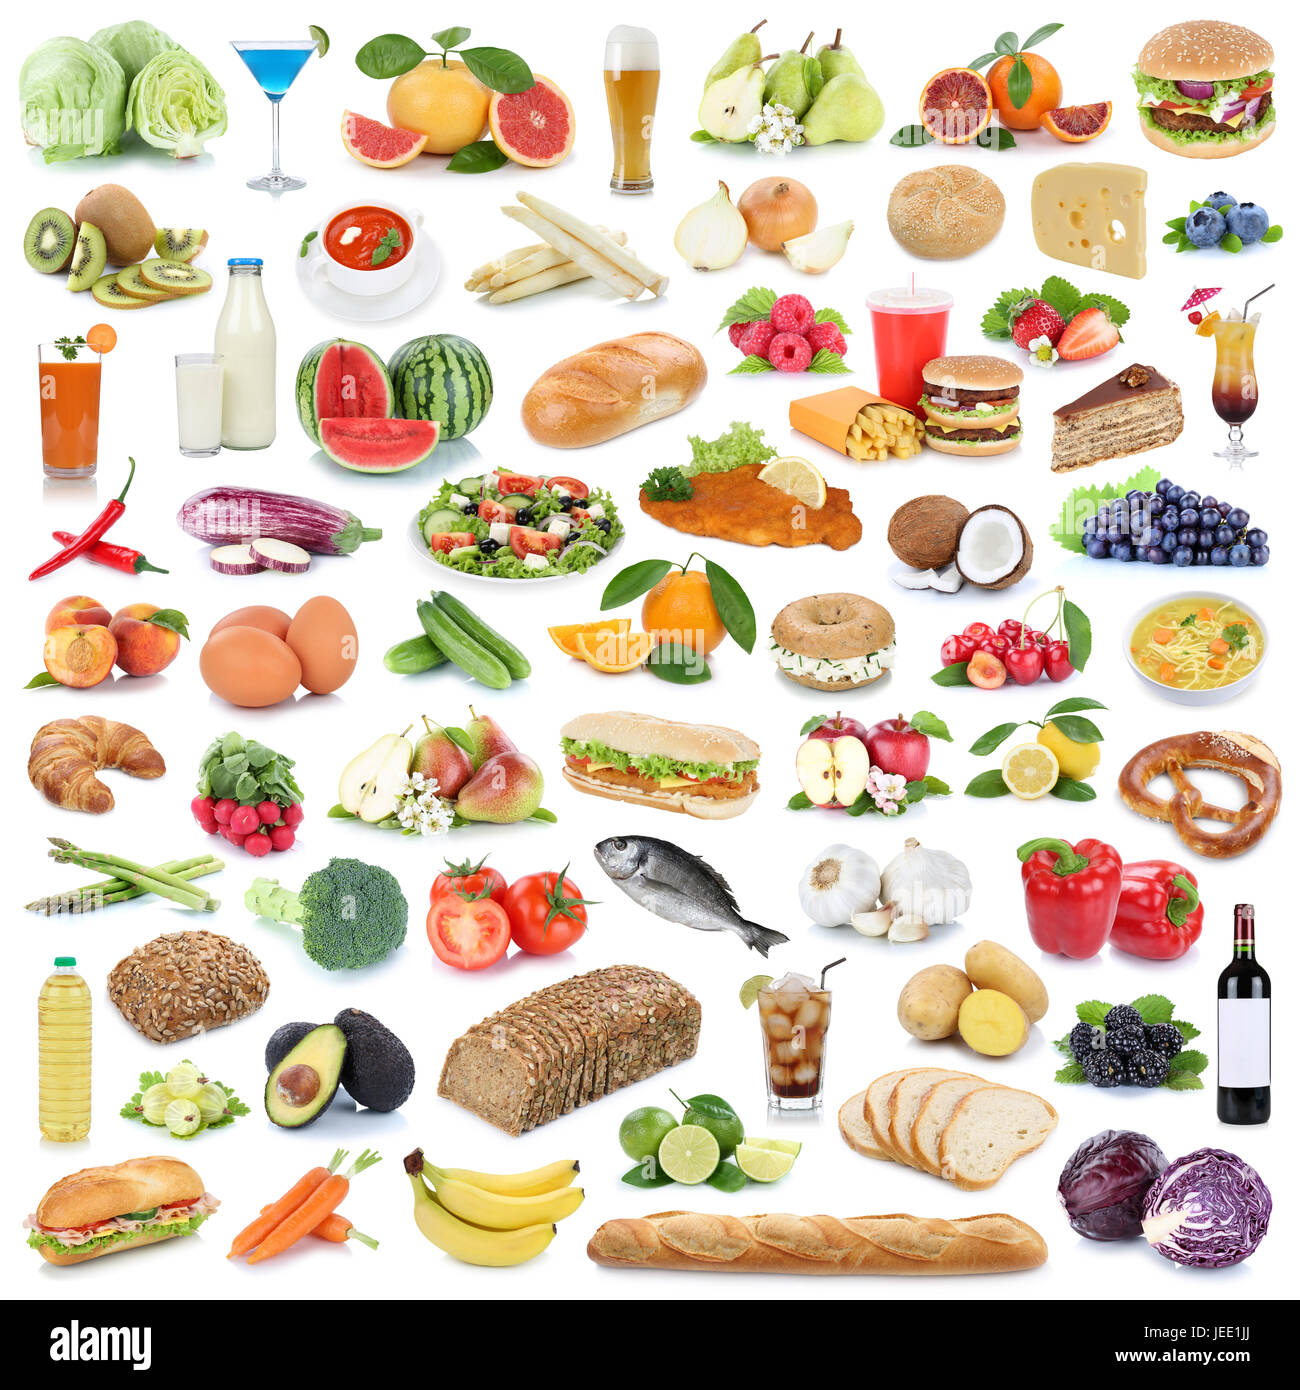 Essen Sammlung gesunde Essen Obst und Gemüse Obst Getränke isoliert auf weißem Hintergrund Stockfoto